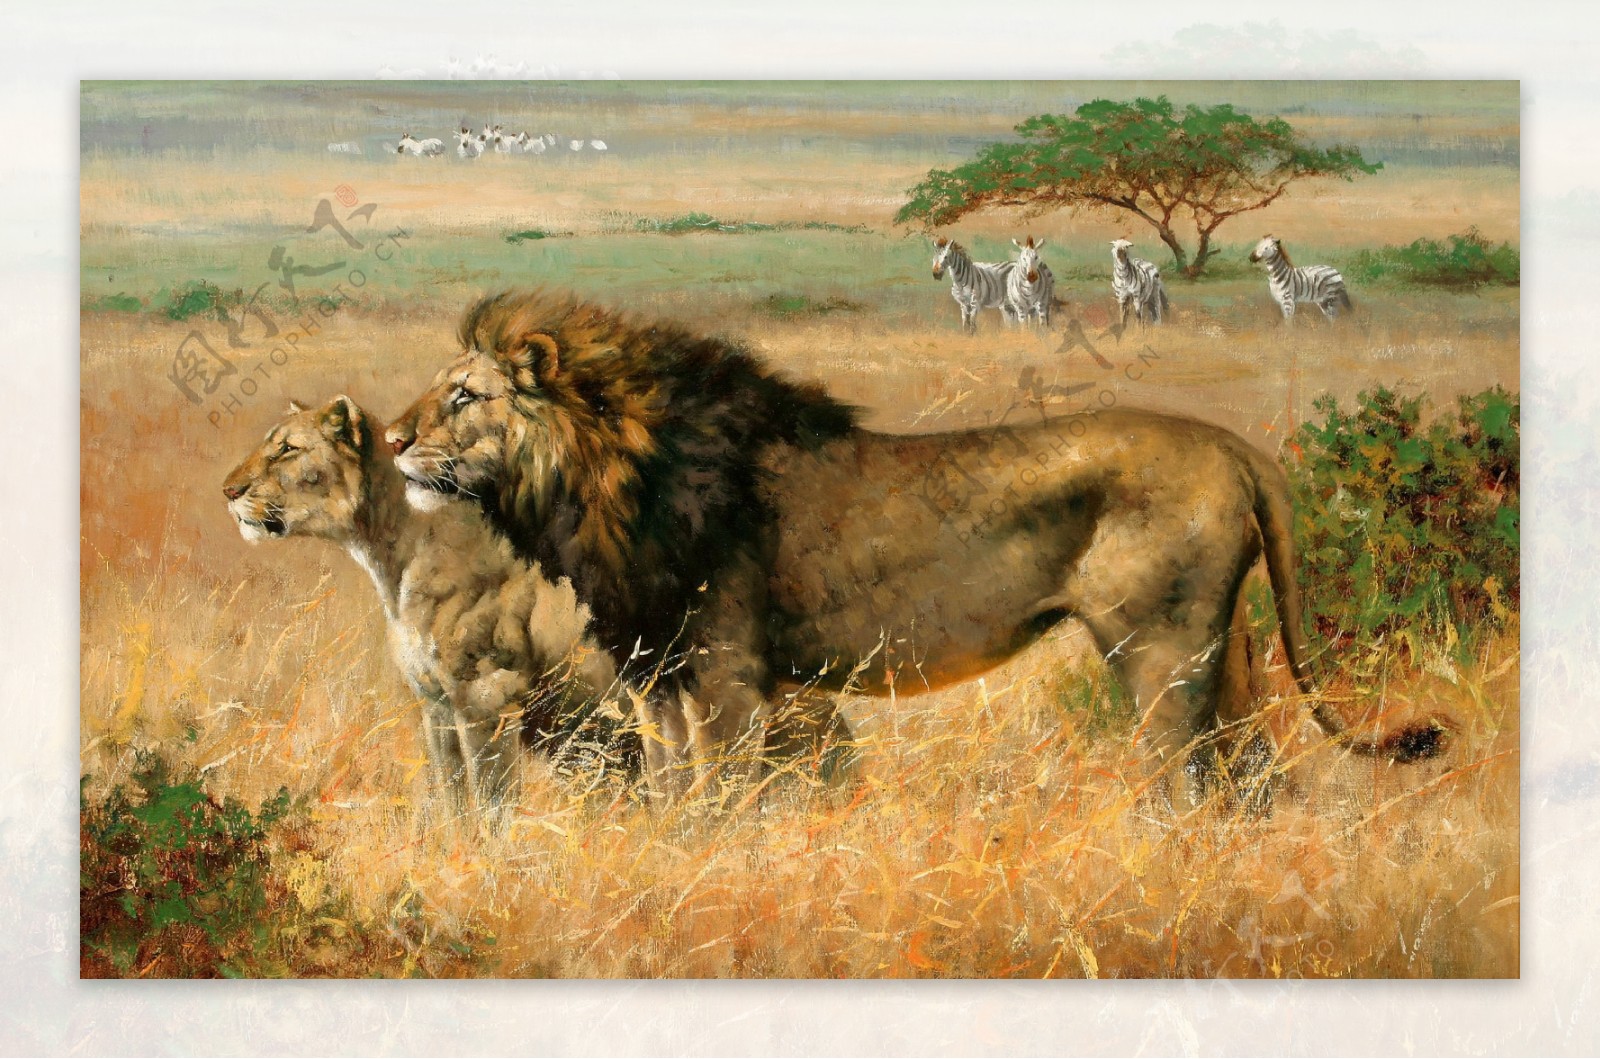 非洲狮子图片